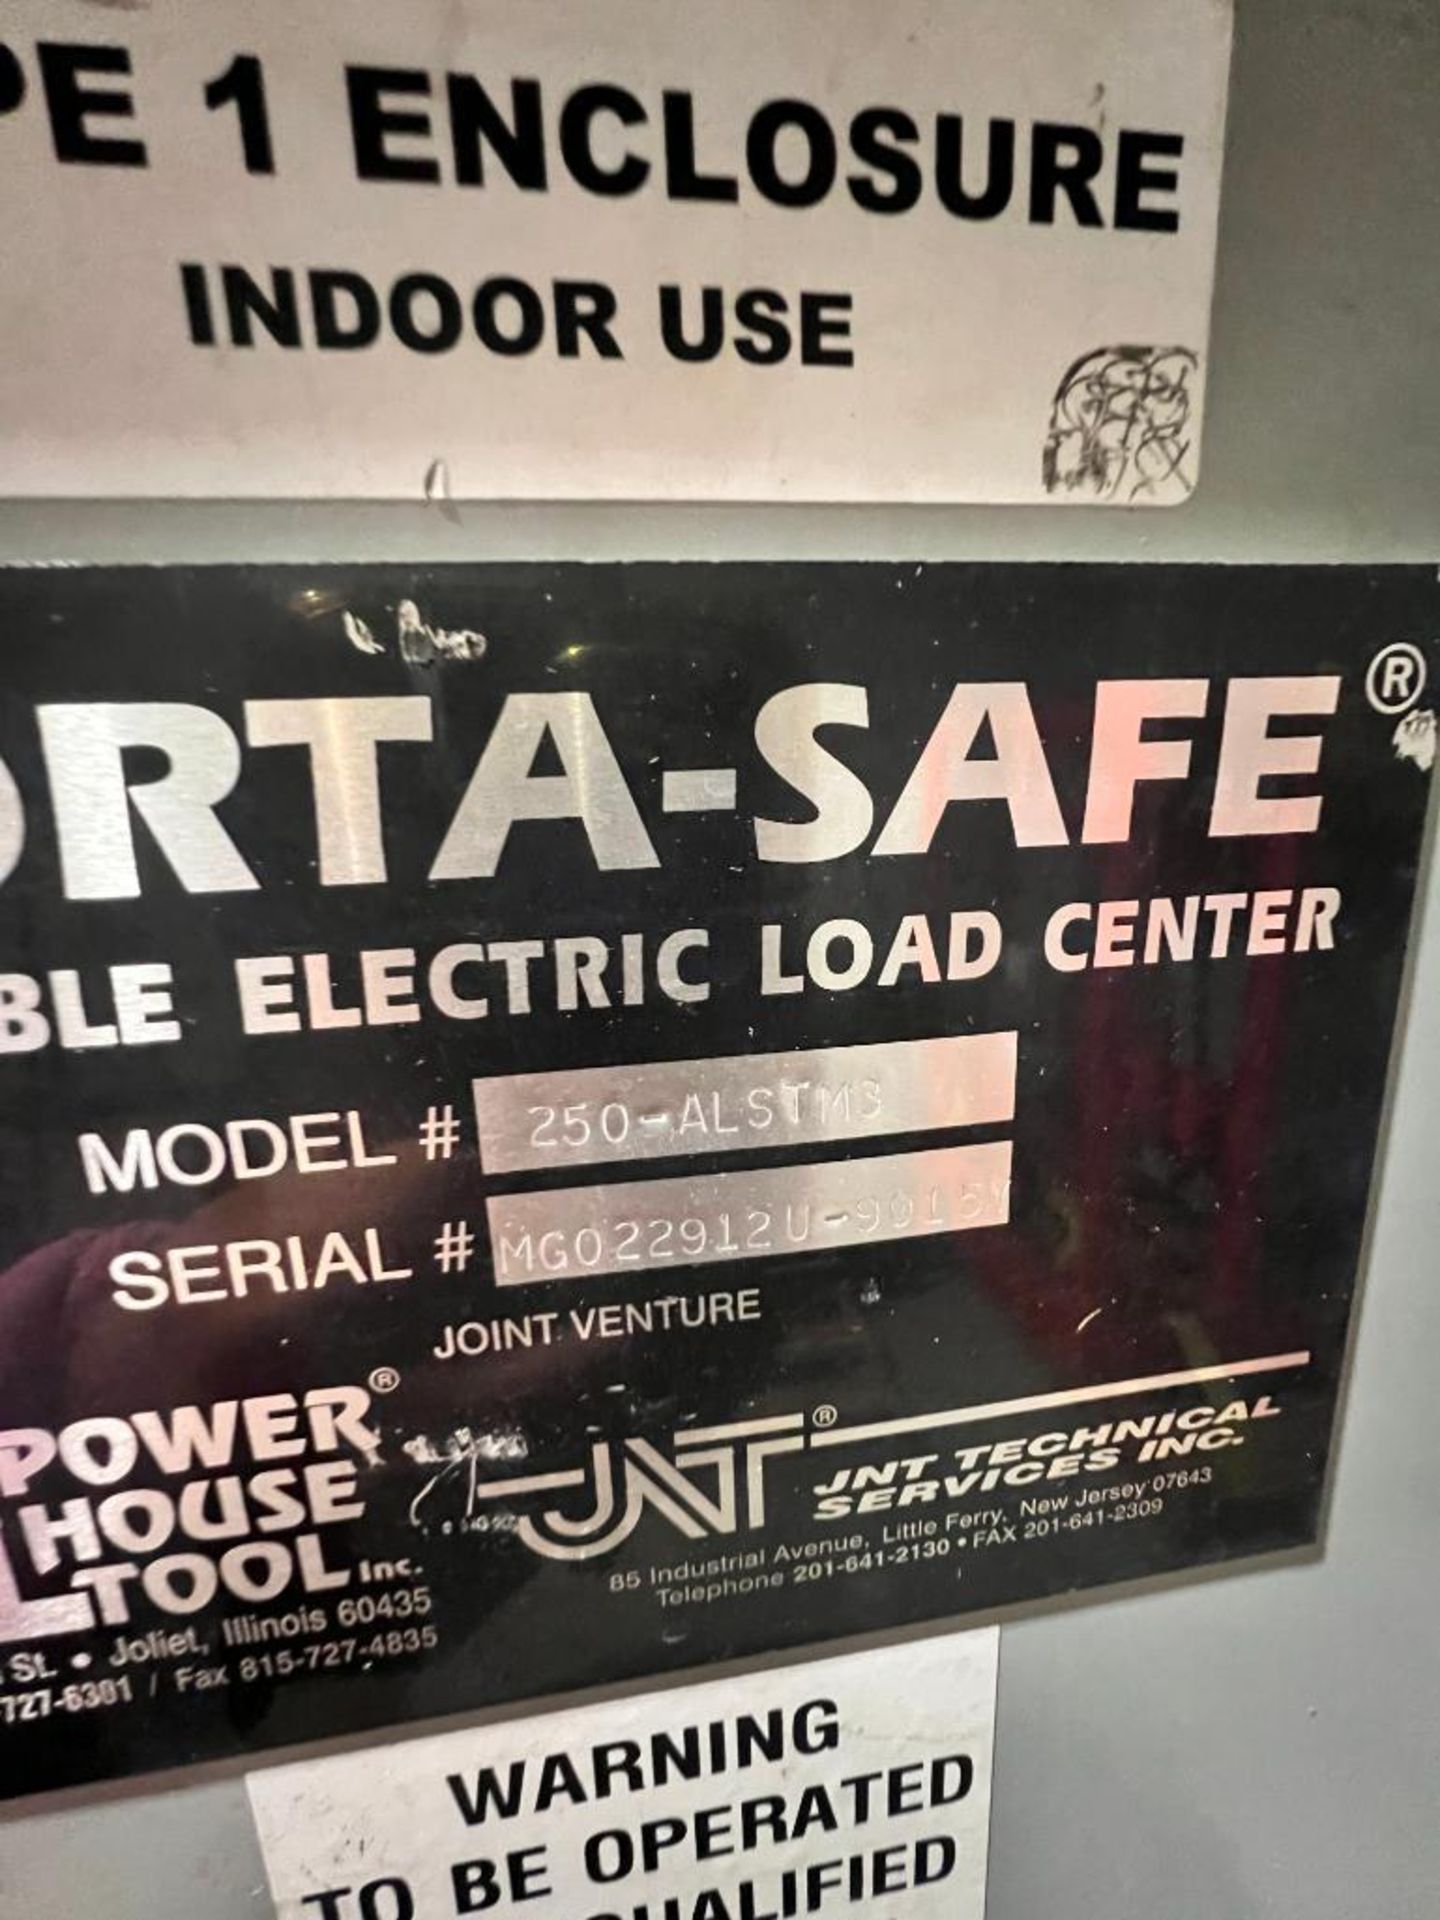 Porta-Safe Portable Electric Load Center, Model 250ALSTOM3 - Image 4 of 4